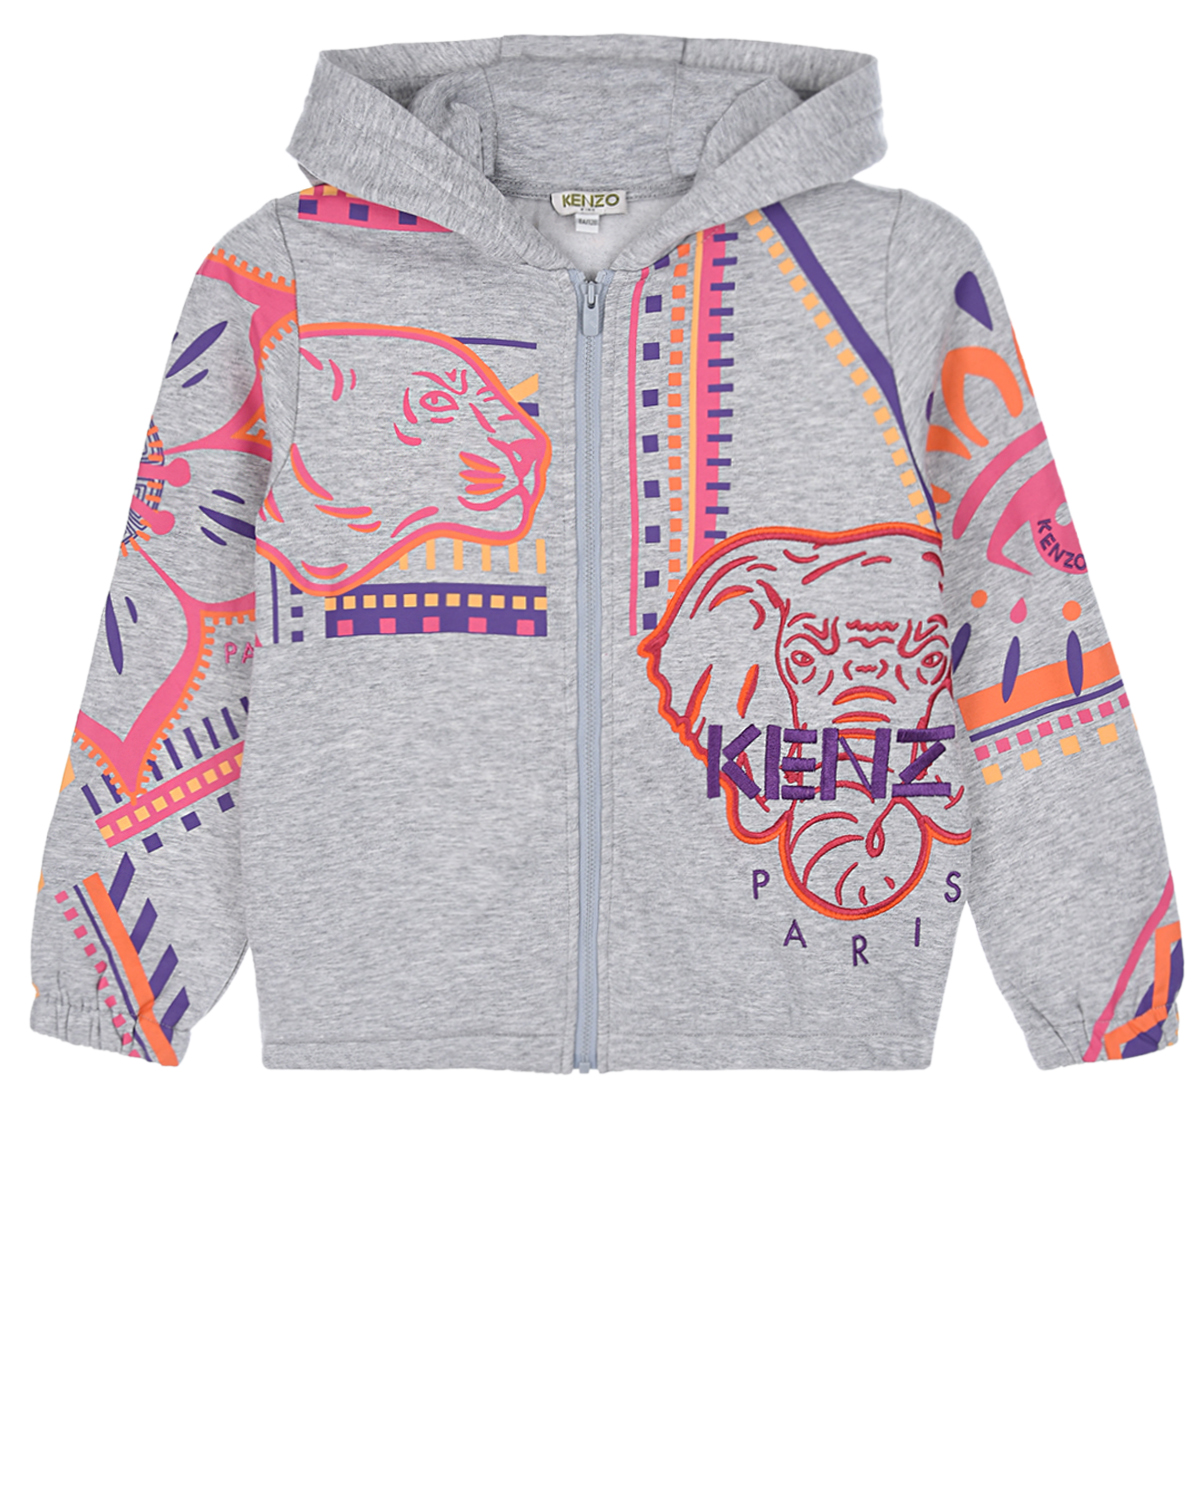 Спортивная куртка с разноцветным принтом "животные" KENZO детская, размер 140